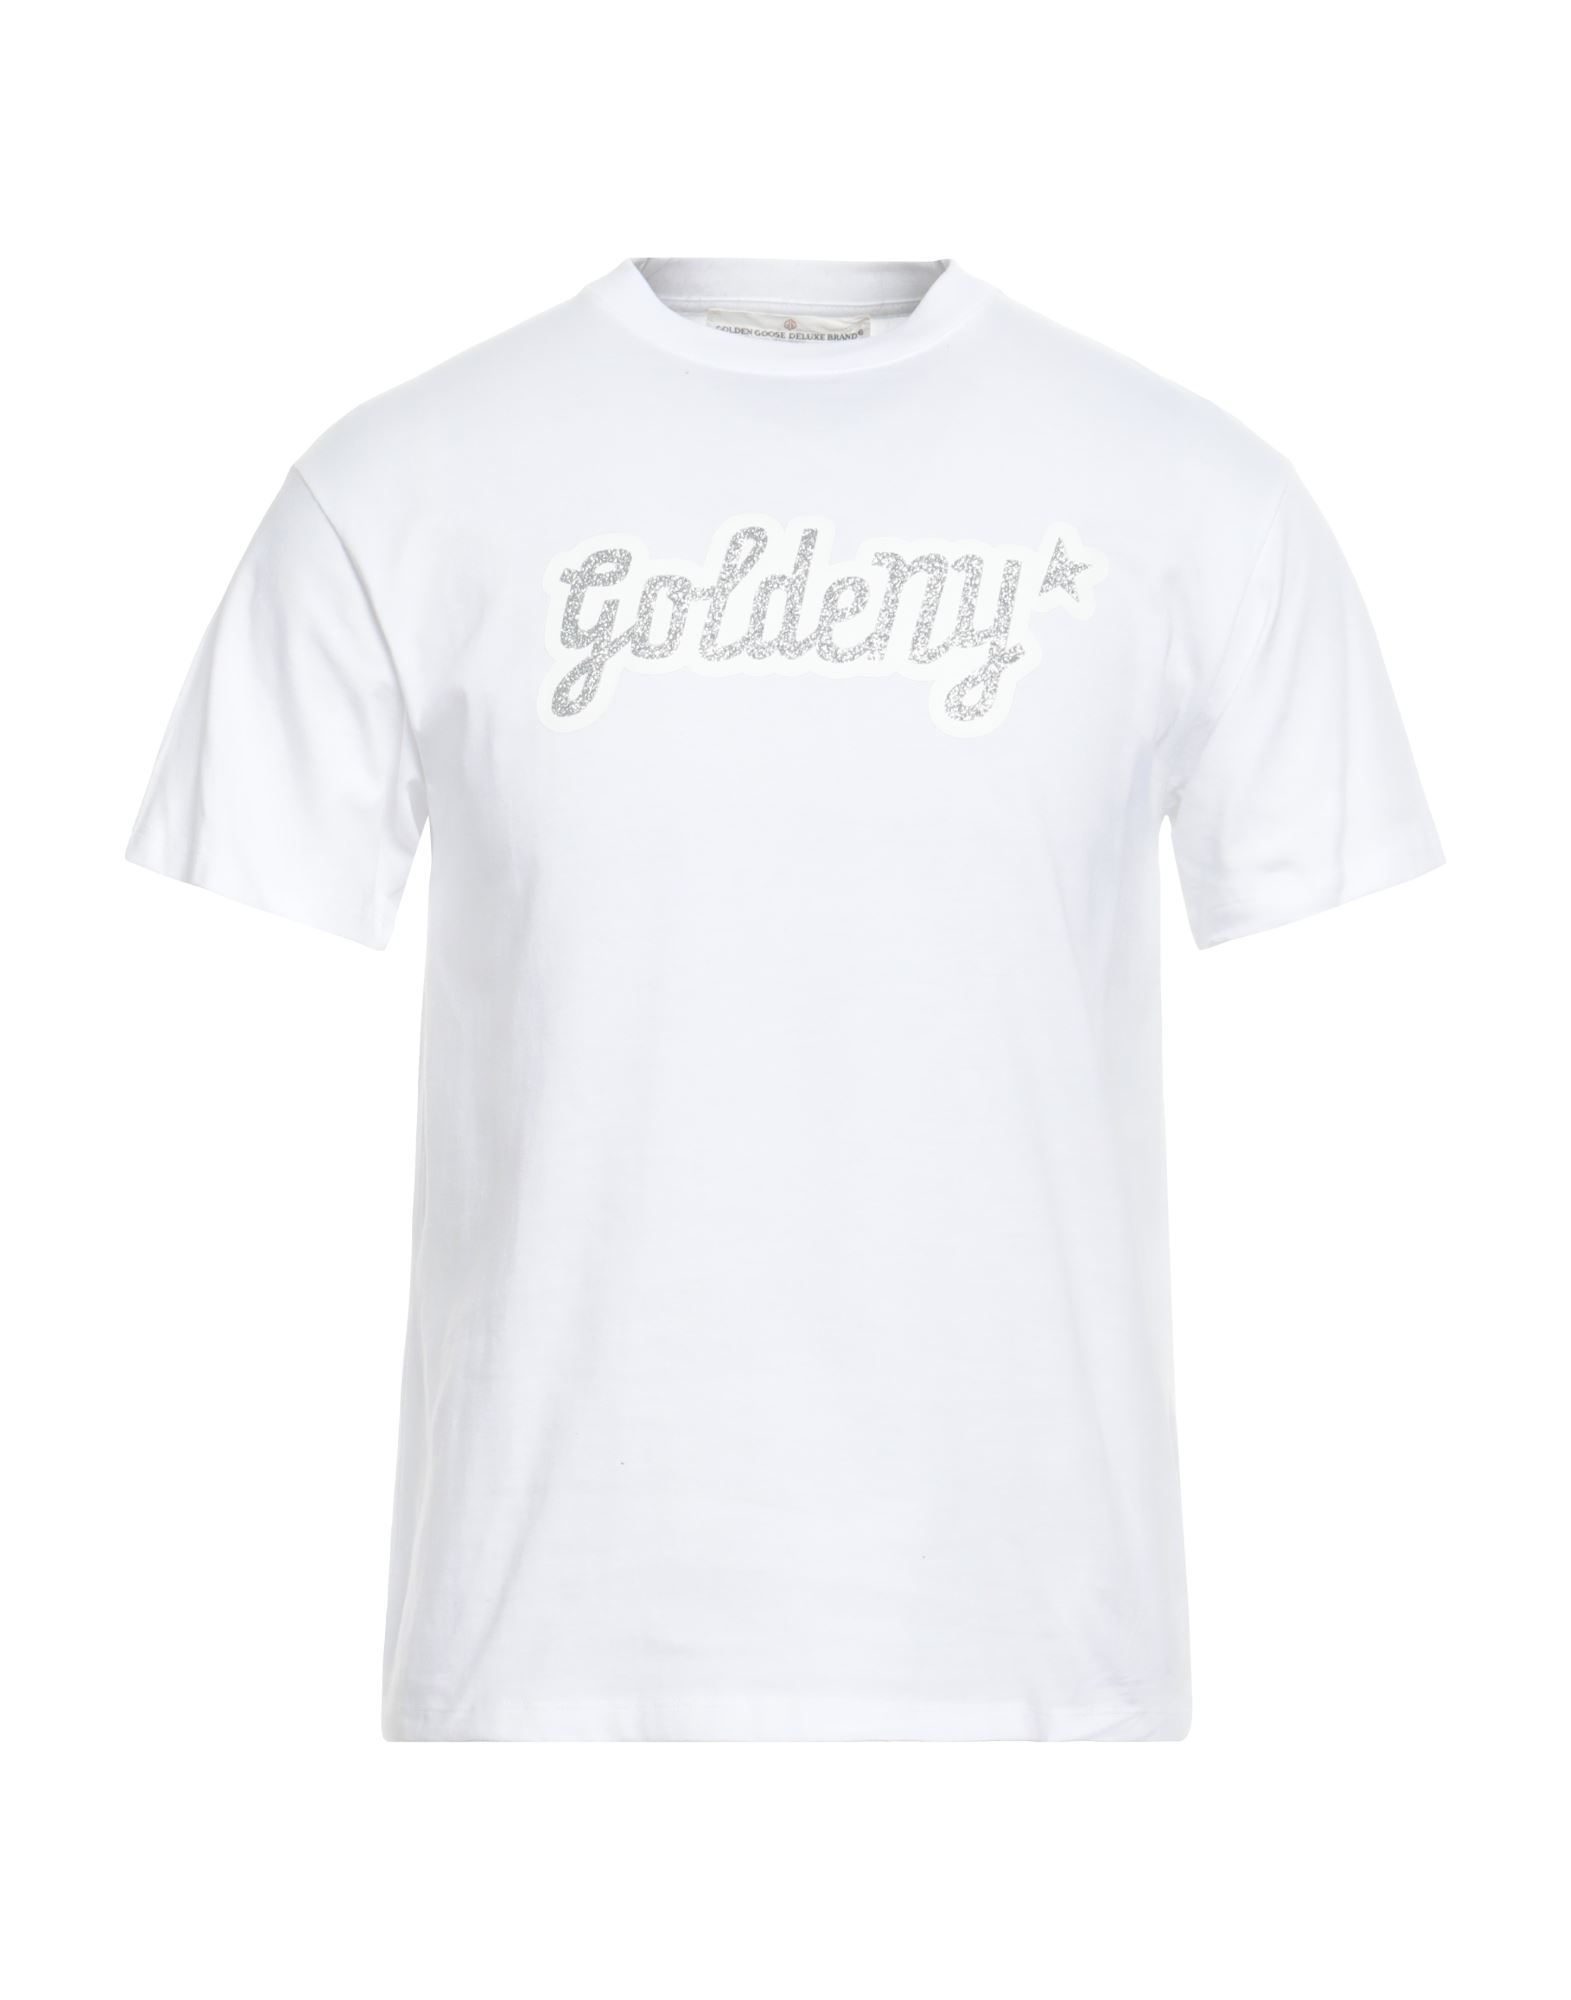 GOLDEN GOOSE T-shirts Herren Weiß von GOLDEN GOOSE